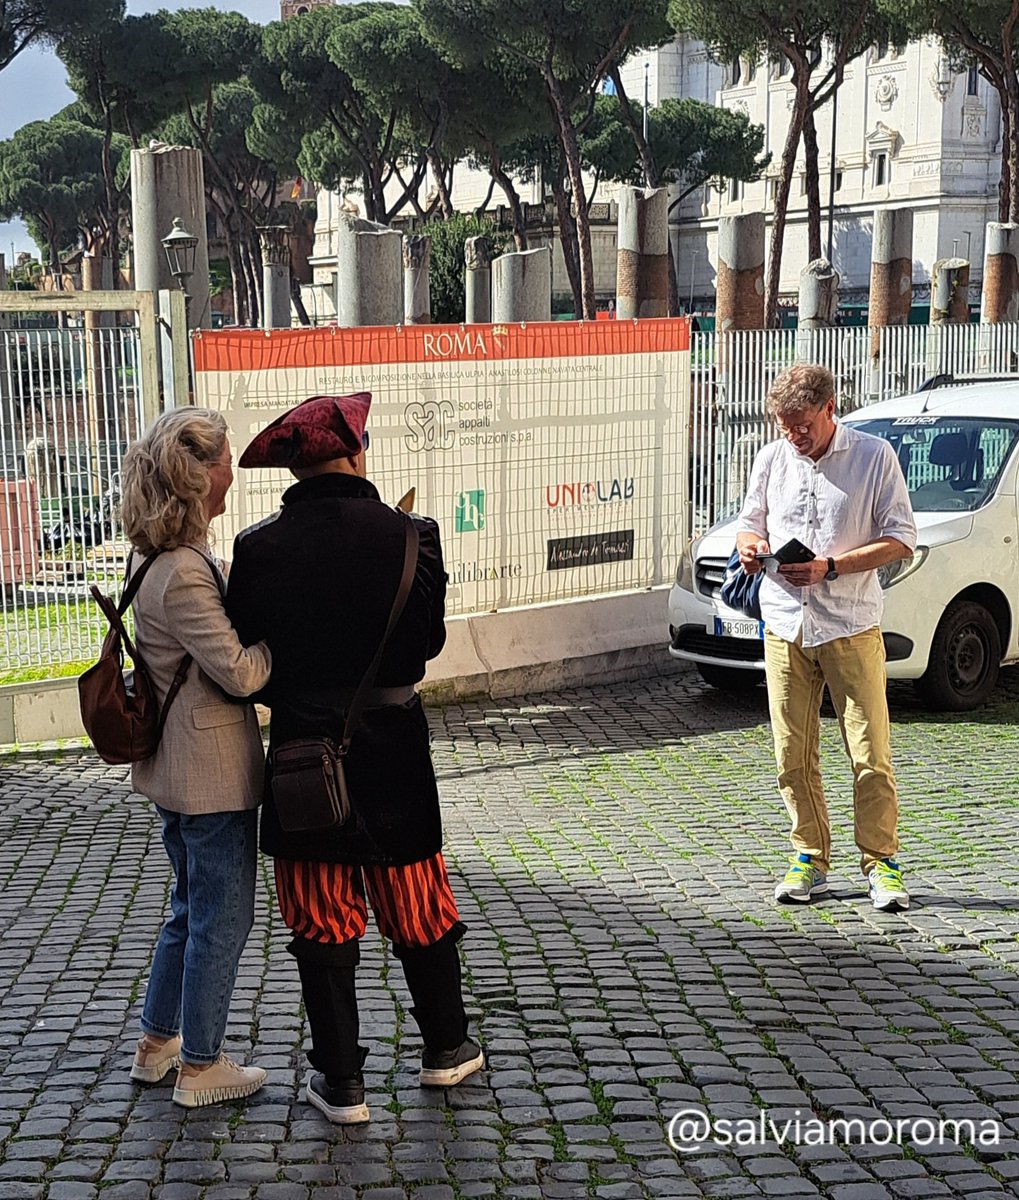 Finiti i GLADIATORI arrivano i leggendari PIRATI dell'antica #Roma pretendo soldi da #turisti per una foto. E comunque pure i turisti se le cercano, vieni nella città eterna e ti fai la foto con il pirata? Ma allora sei proprio....